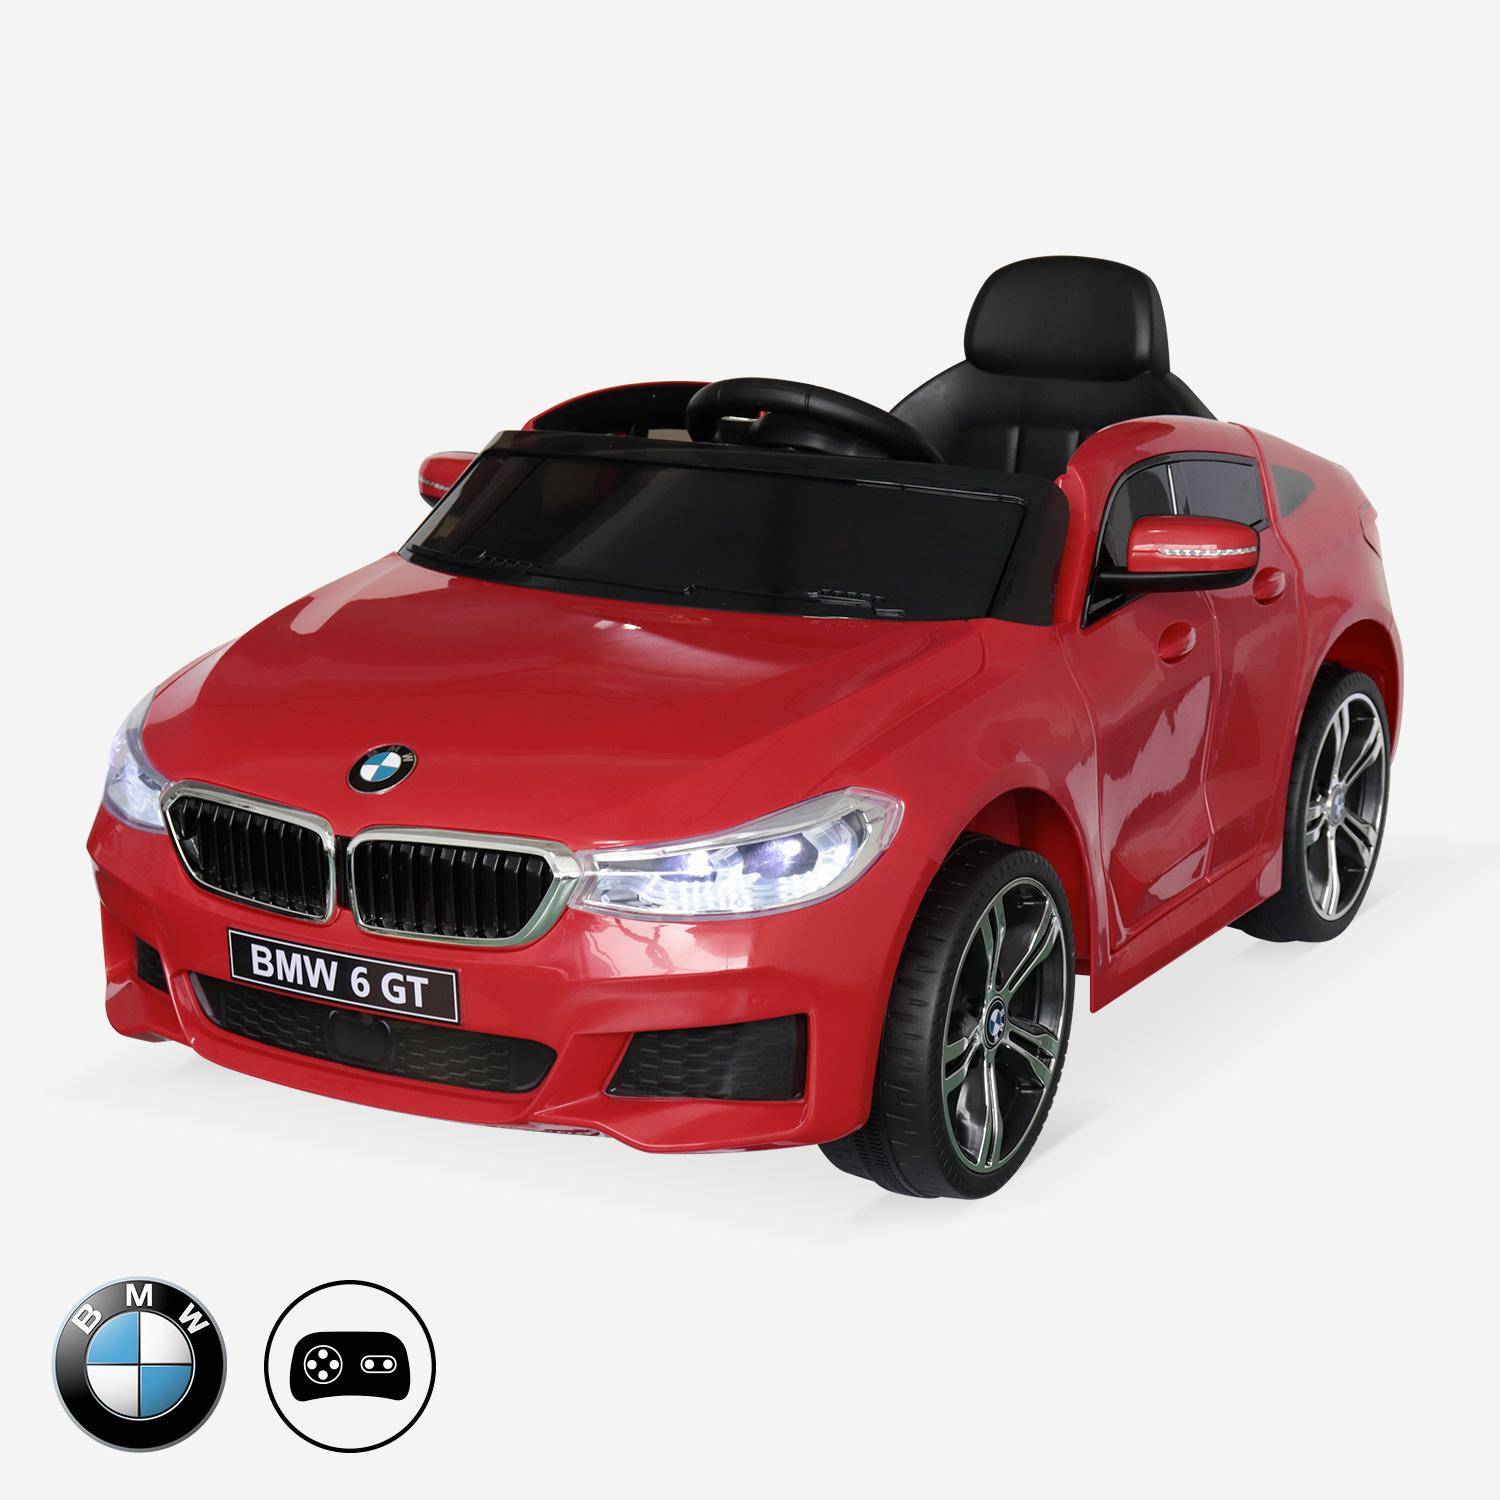 BMW Serie 6GT Gran Turismo rossa, macchina elettrica per bambini 12V 4 Ah, 1 posto, con autoradio e telecomando Photo1